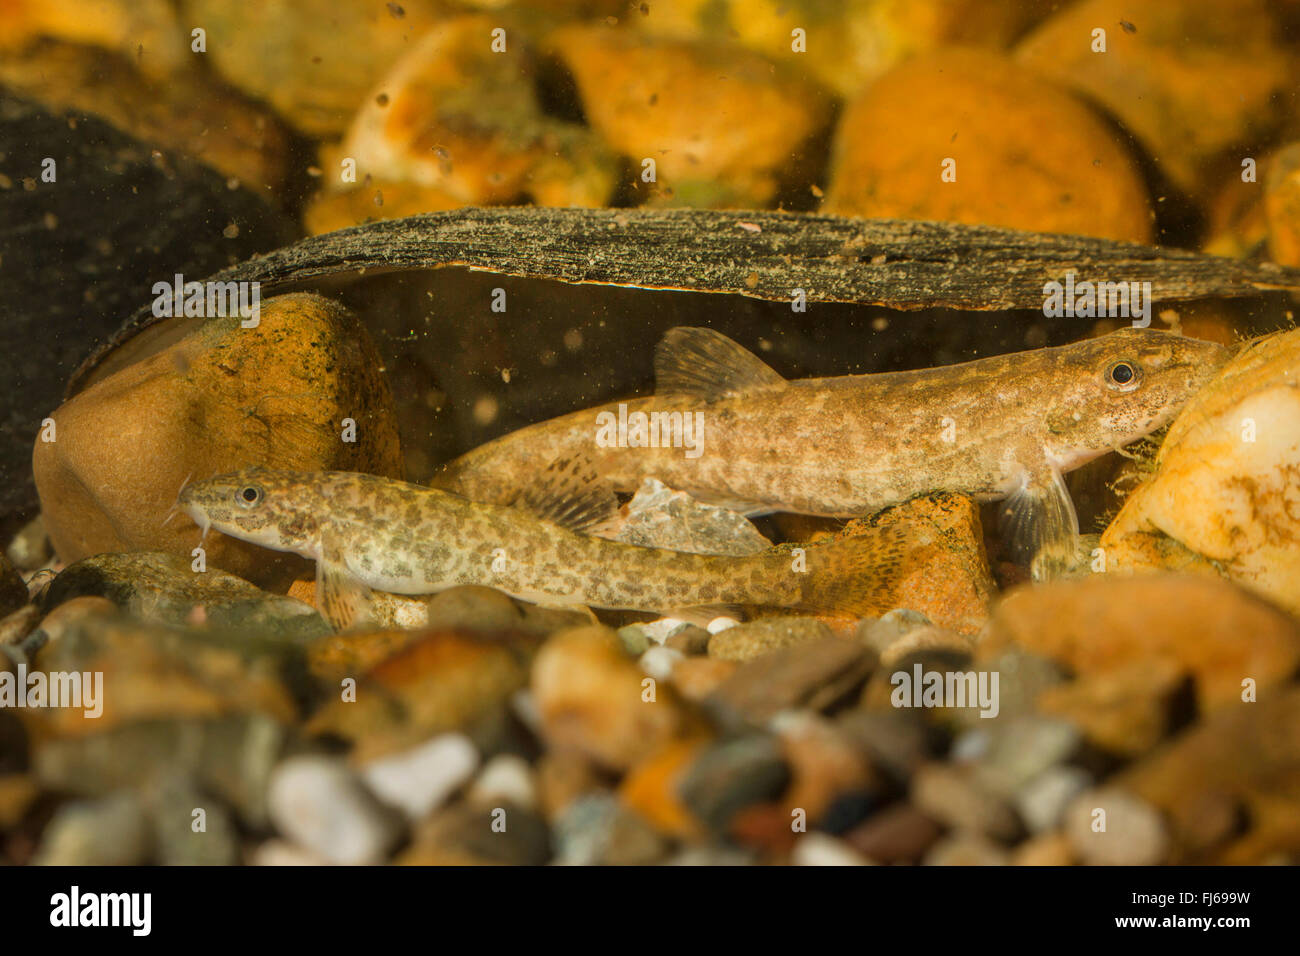 stone loach (Noemacheilus barbulatus, Barbatula barbatula, Nemacheilus barbatulus), taking shelter under a shell Stock Photo